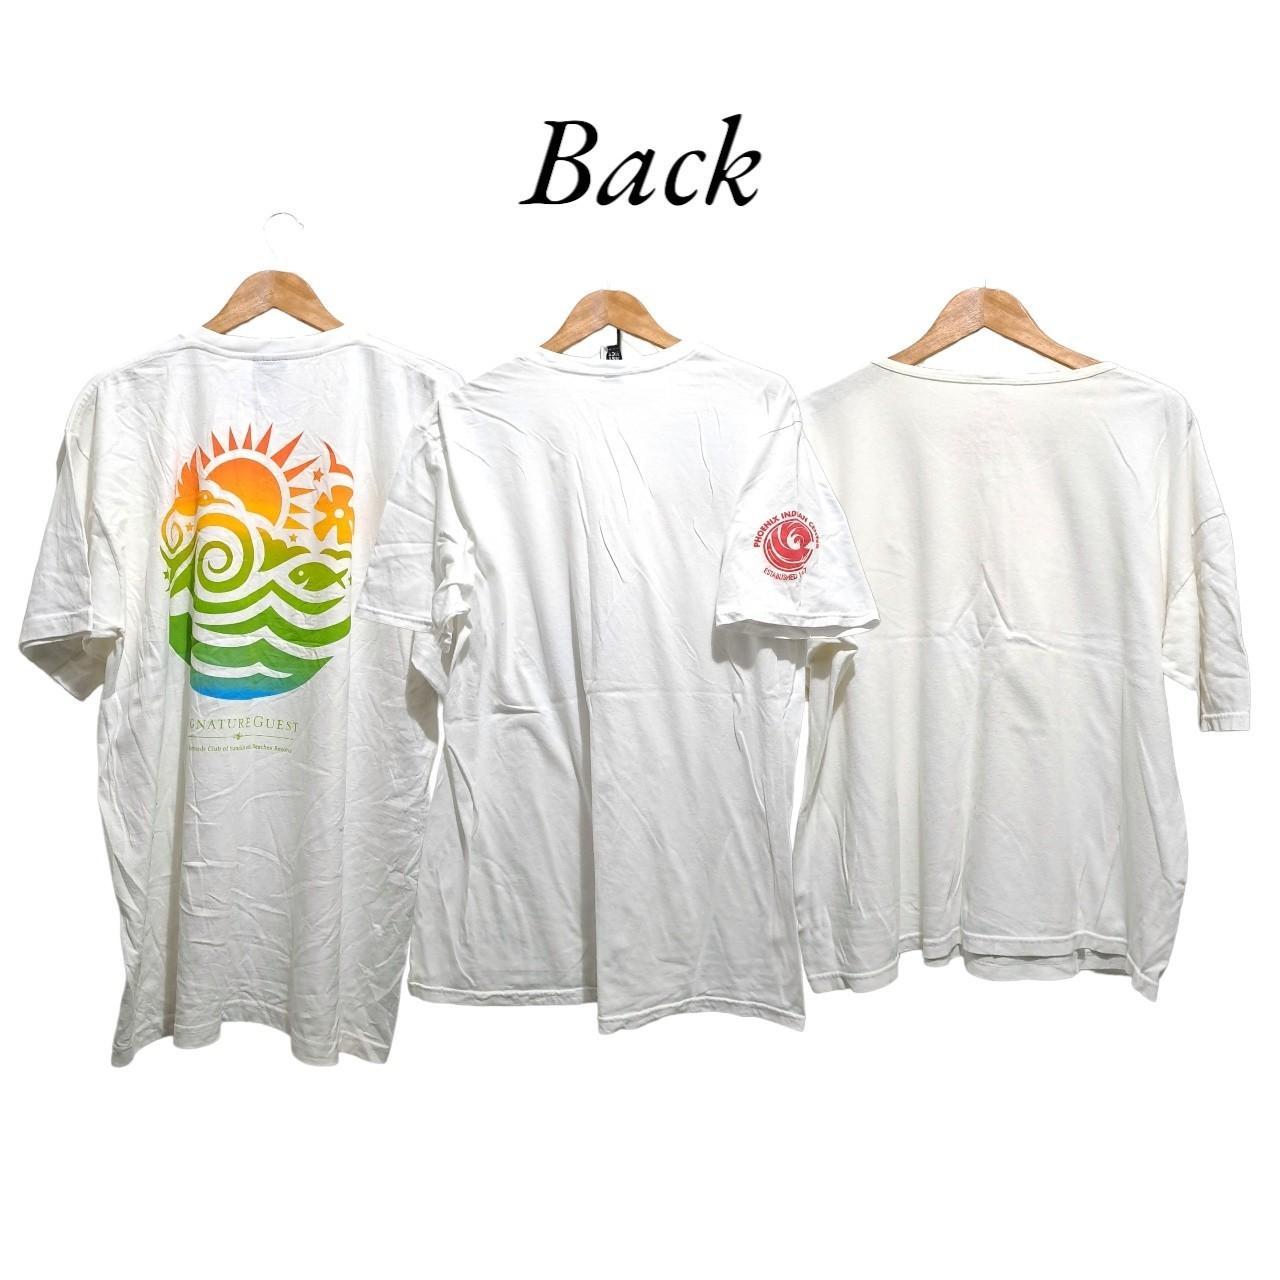 ×3 White T-shirts